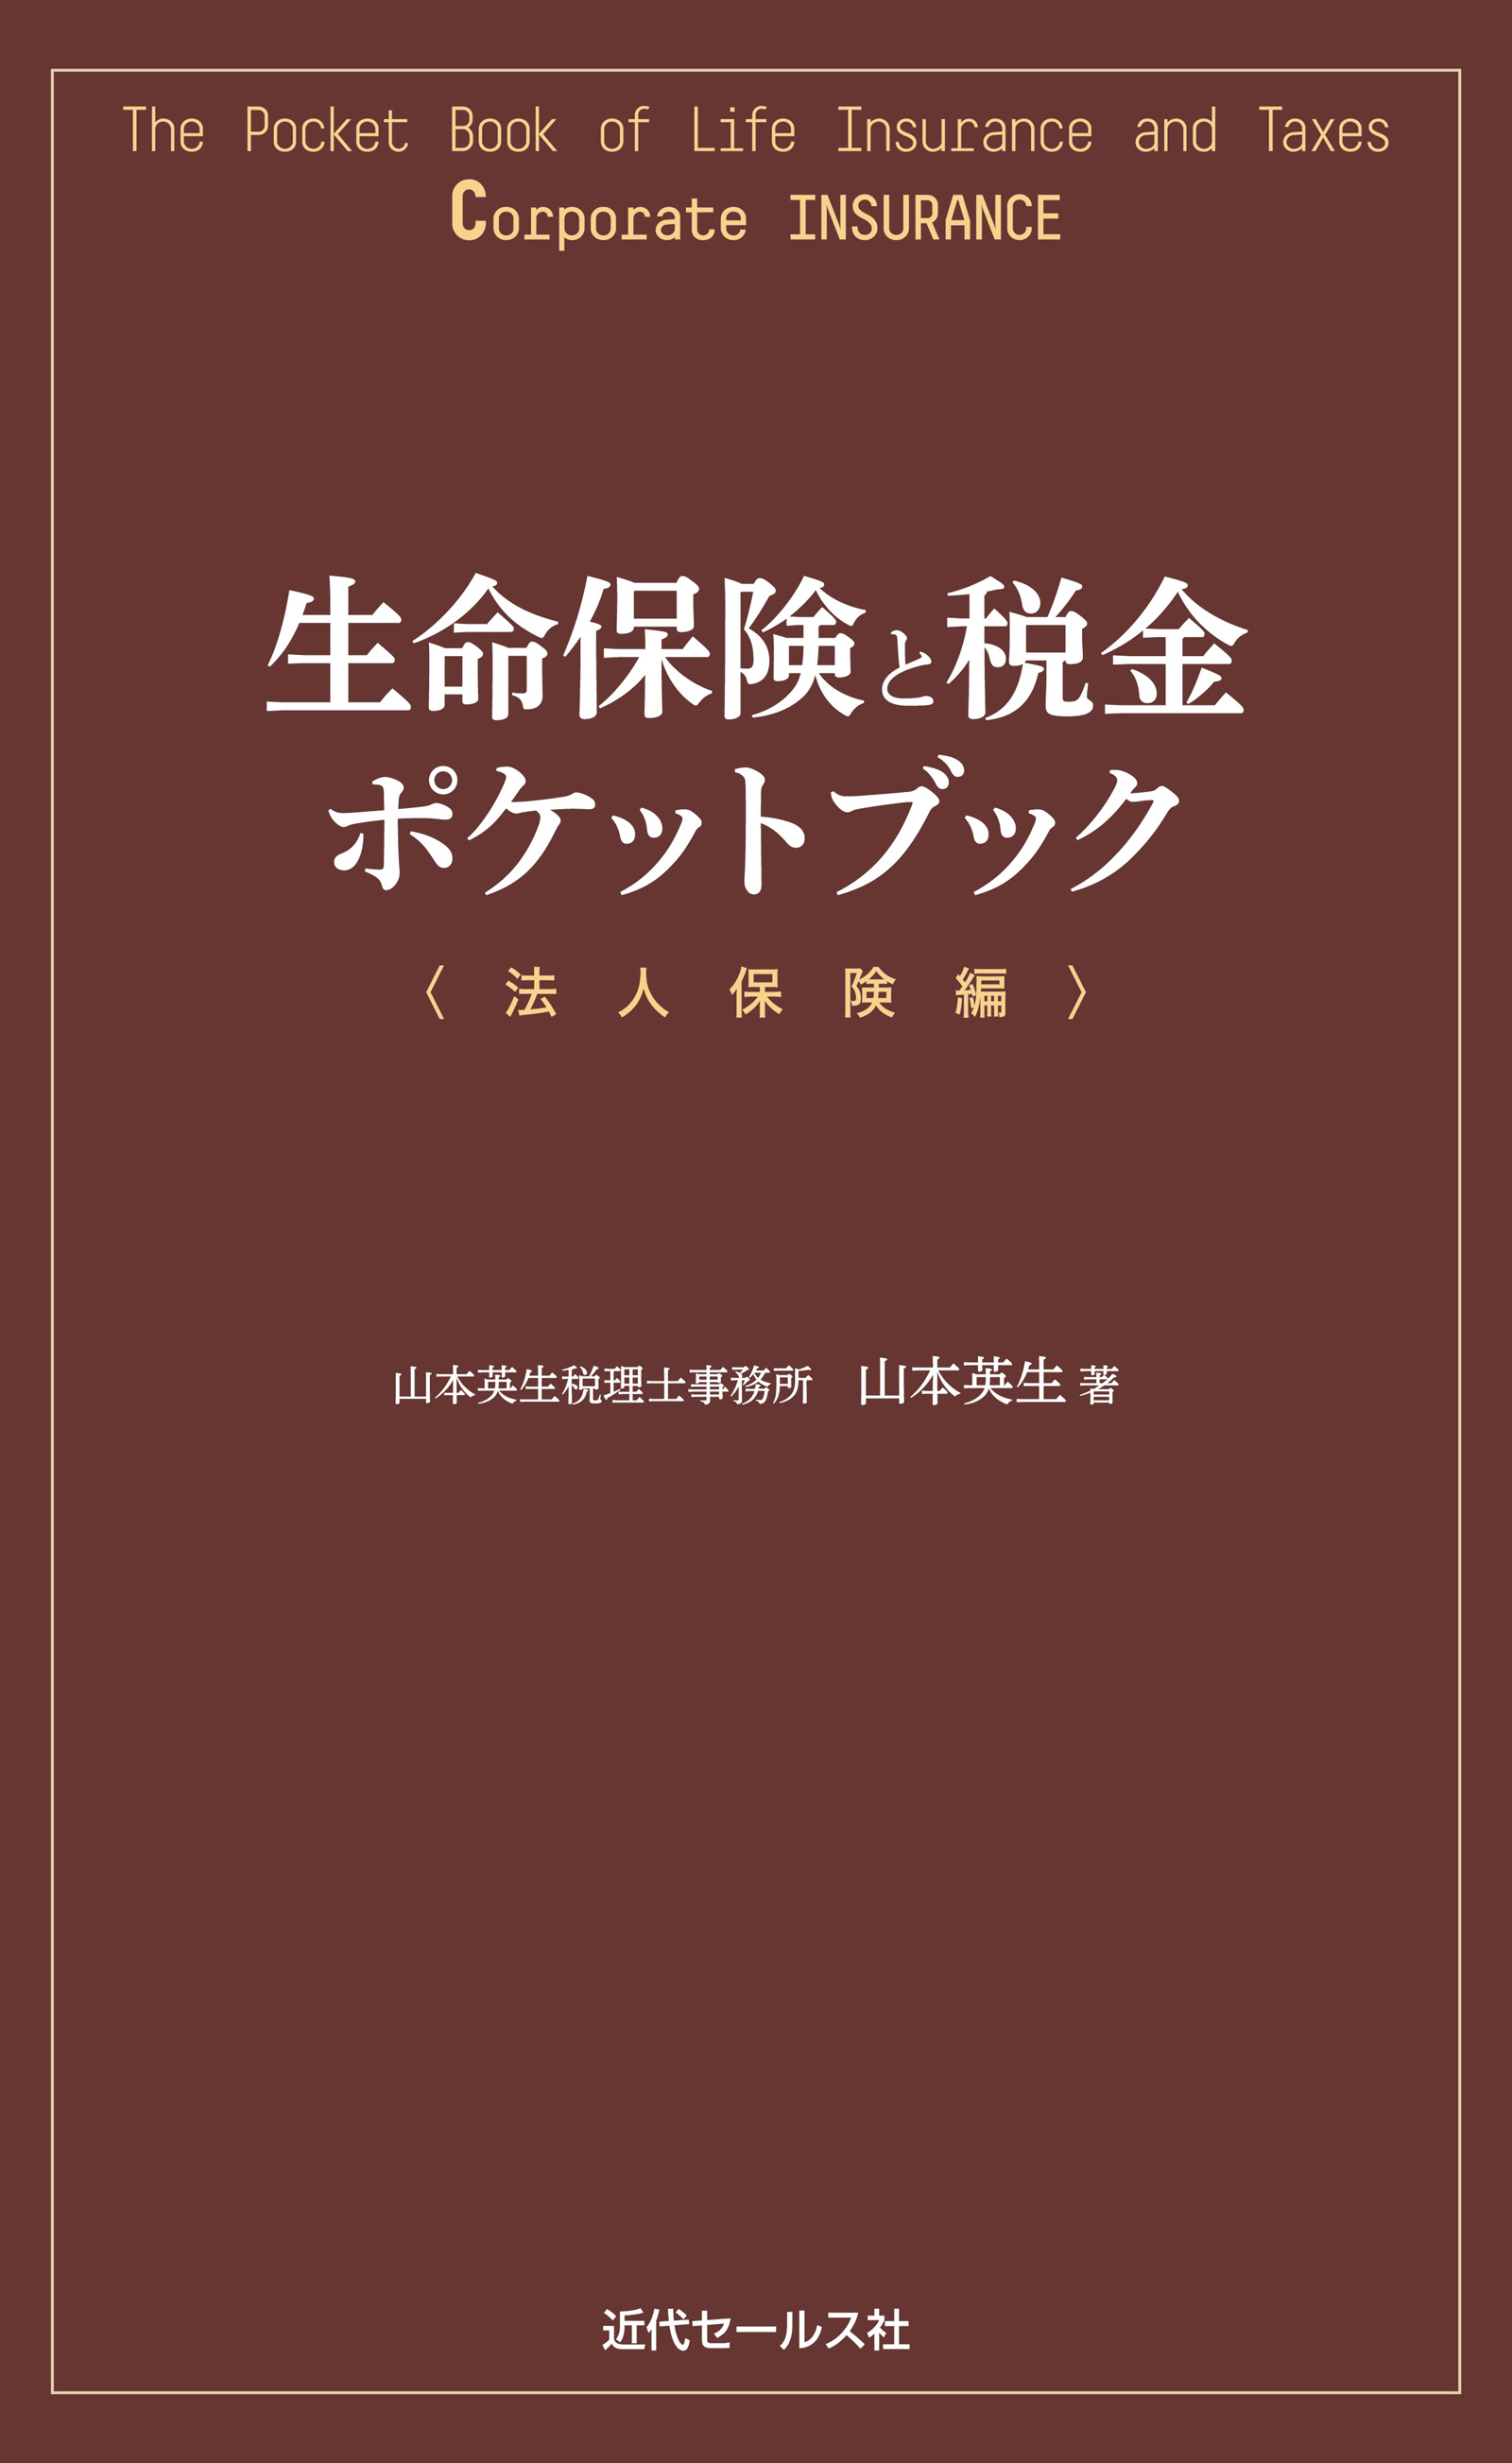 生命保険と税金ポケットブック〈法人保険編〉 - 山本英生 - ビジネス ...